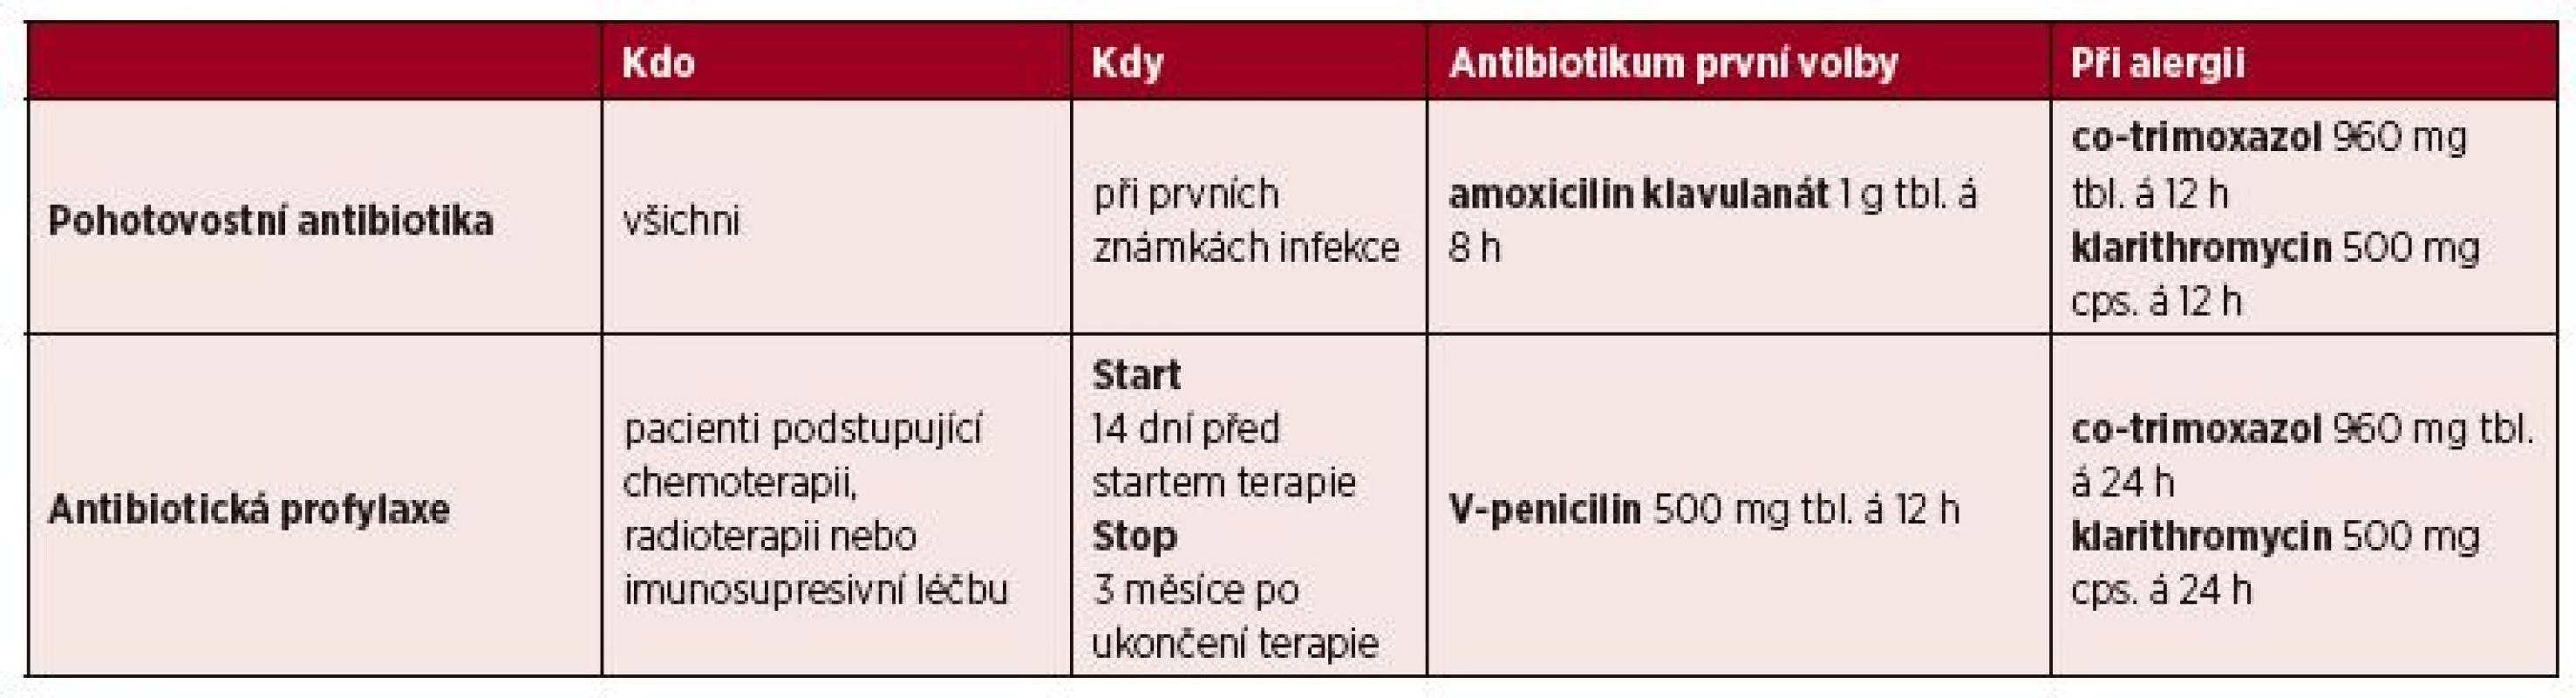 Pohotovostní antibiotika a antibiotická profylaxe